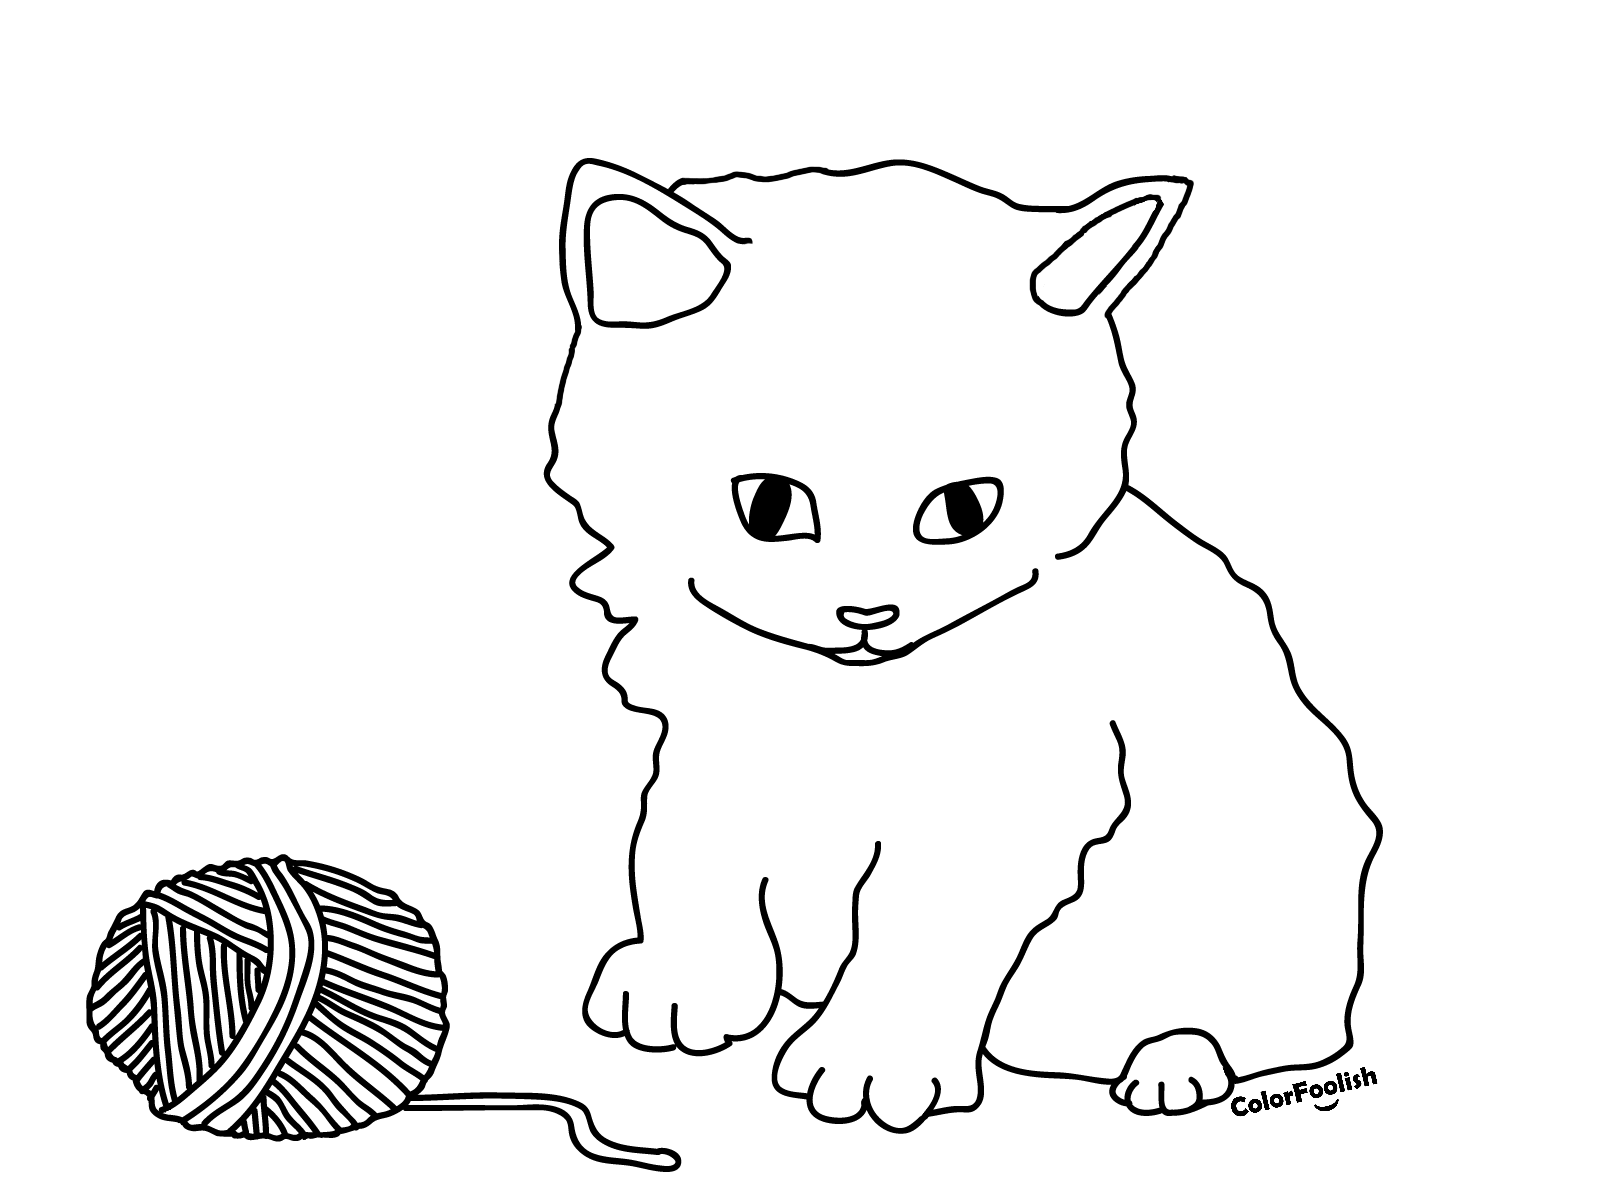 Dibujo para colorear de un gatito jugando con una bola de lana